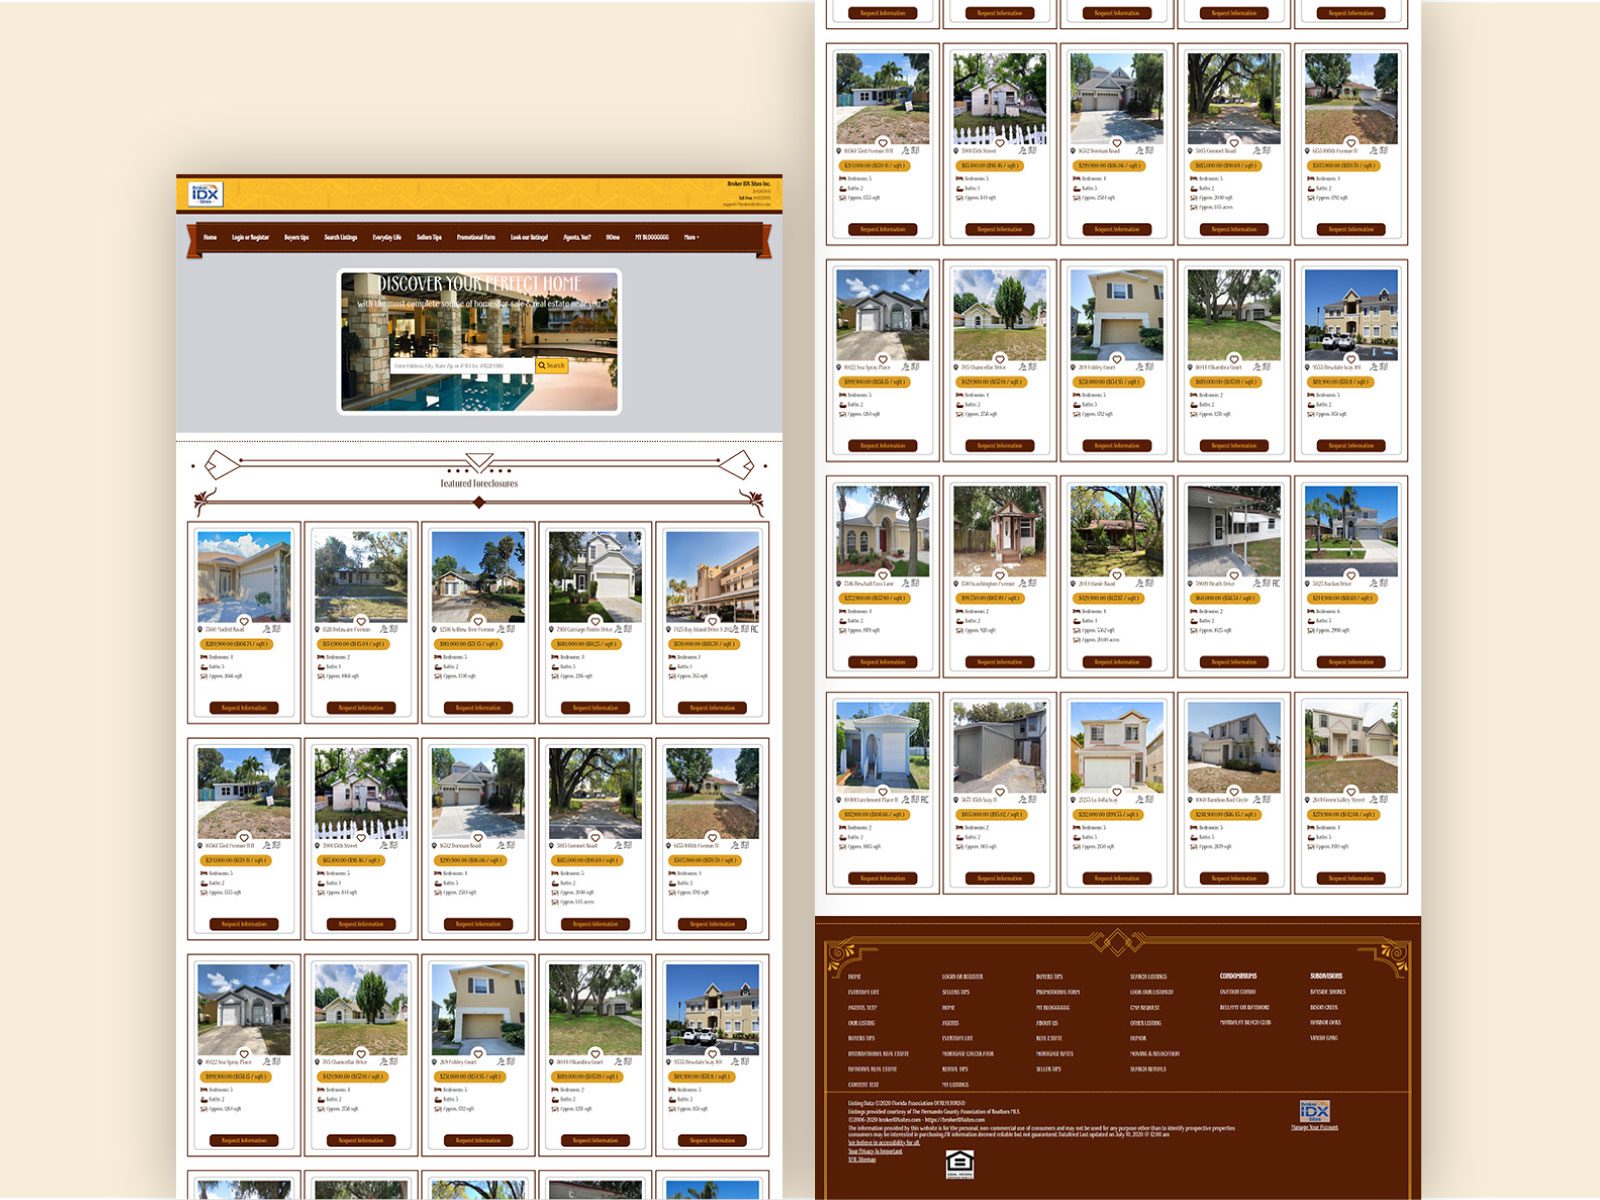 IDX Broker Websites - Online Marketing for Real Estate Professionals